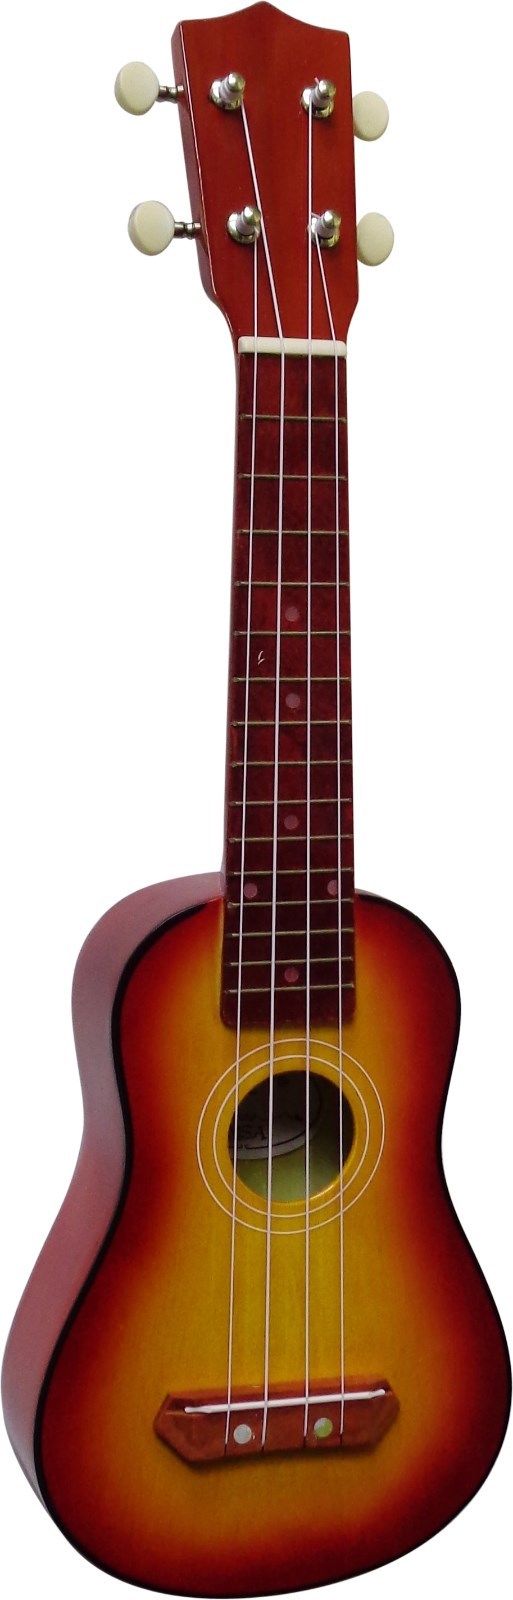 Sopránové ukulele MSA-UK7 sunburst